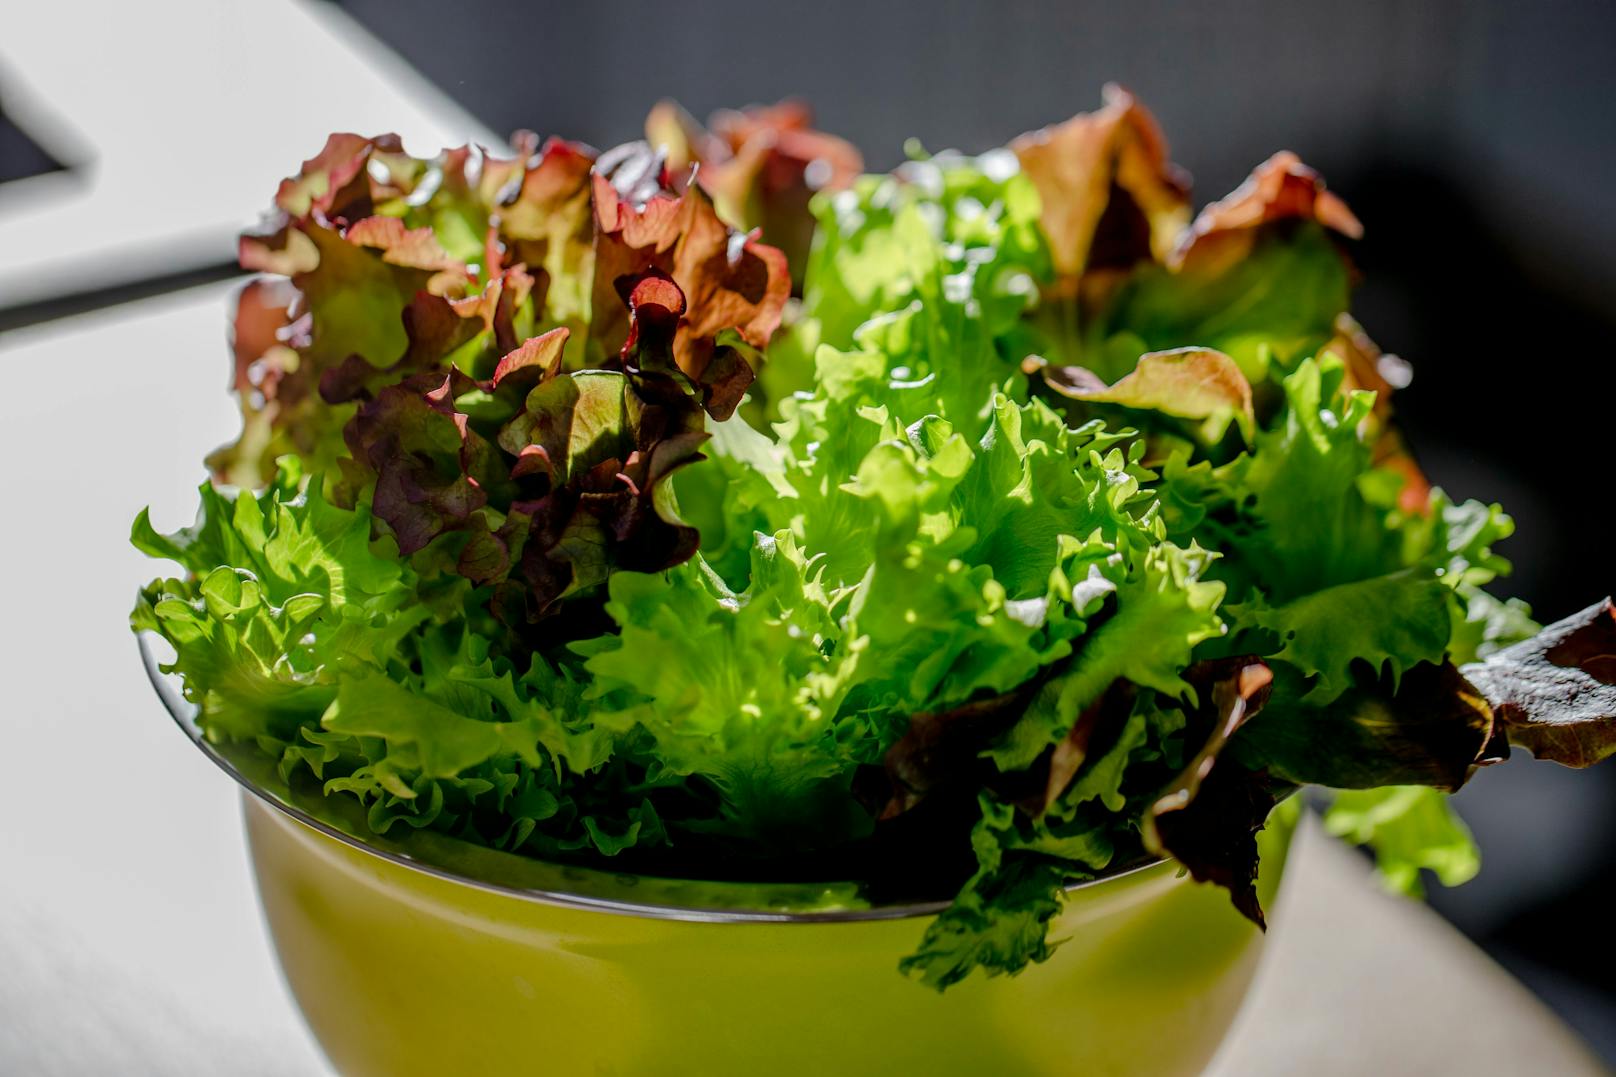 <strong>Grüner Salat: </strong>Auch pflanzliche Lebensmittel können mit Bakterien belastet sein. Besonders häufig ist dies mit dem Norovirus Genogruppe I der Fall. Wer an einer Magen-Darm-Infektion leidet, sollte seine Hände gründlich waschen, um Viren nicht auf Lebensmittel zu übertragen. Aber auch auf der anderen Seite gilt: Obst und Gemüse waschen. Ungewaschenes Obst und Gemüse, vor allem aber ungewaschener Salat, sollte gemieden werden.